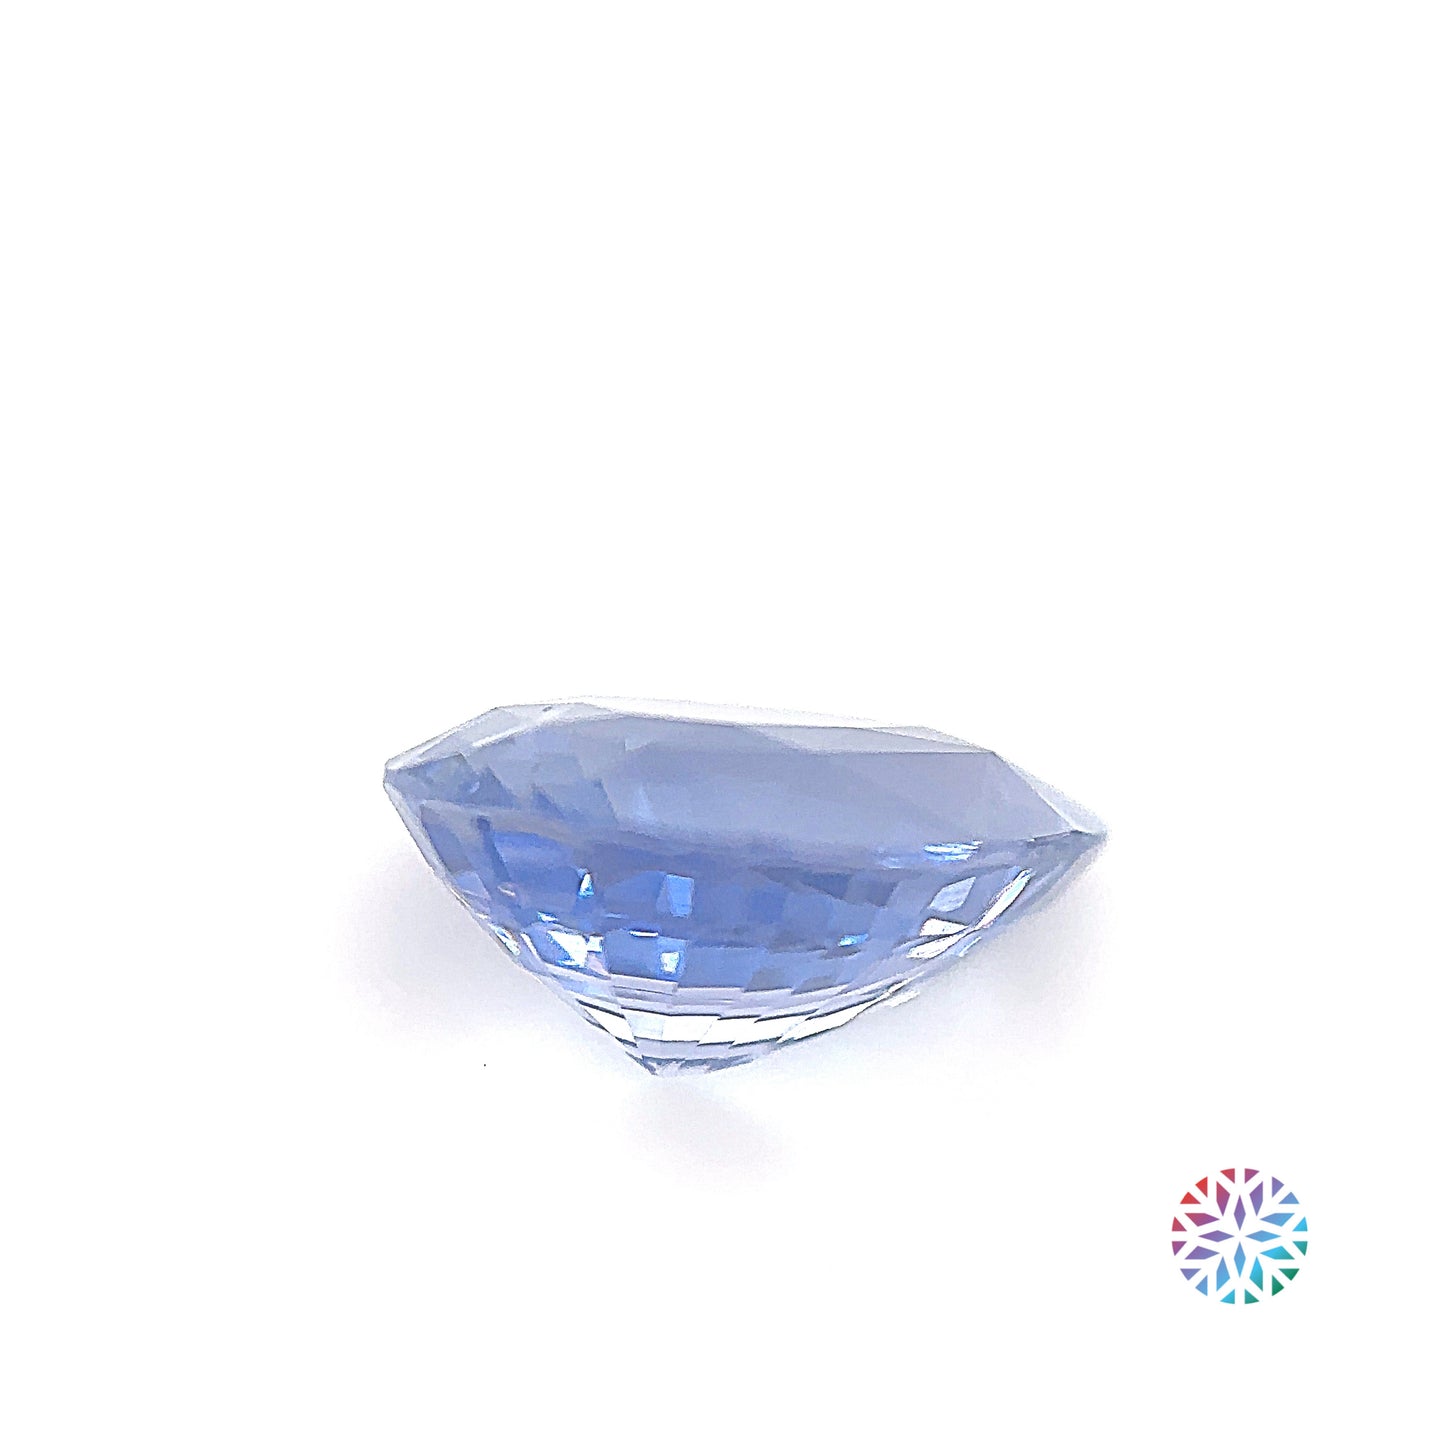 Blue Sapphire- Pear, 2.62ct, 10.1 x 7.5 x 4.8mm, (N)